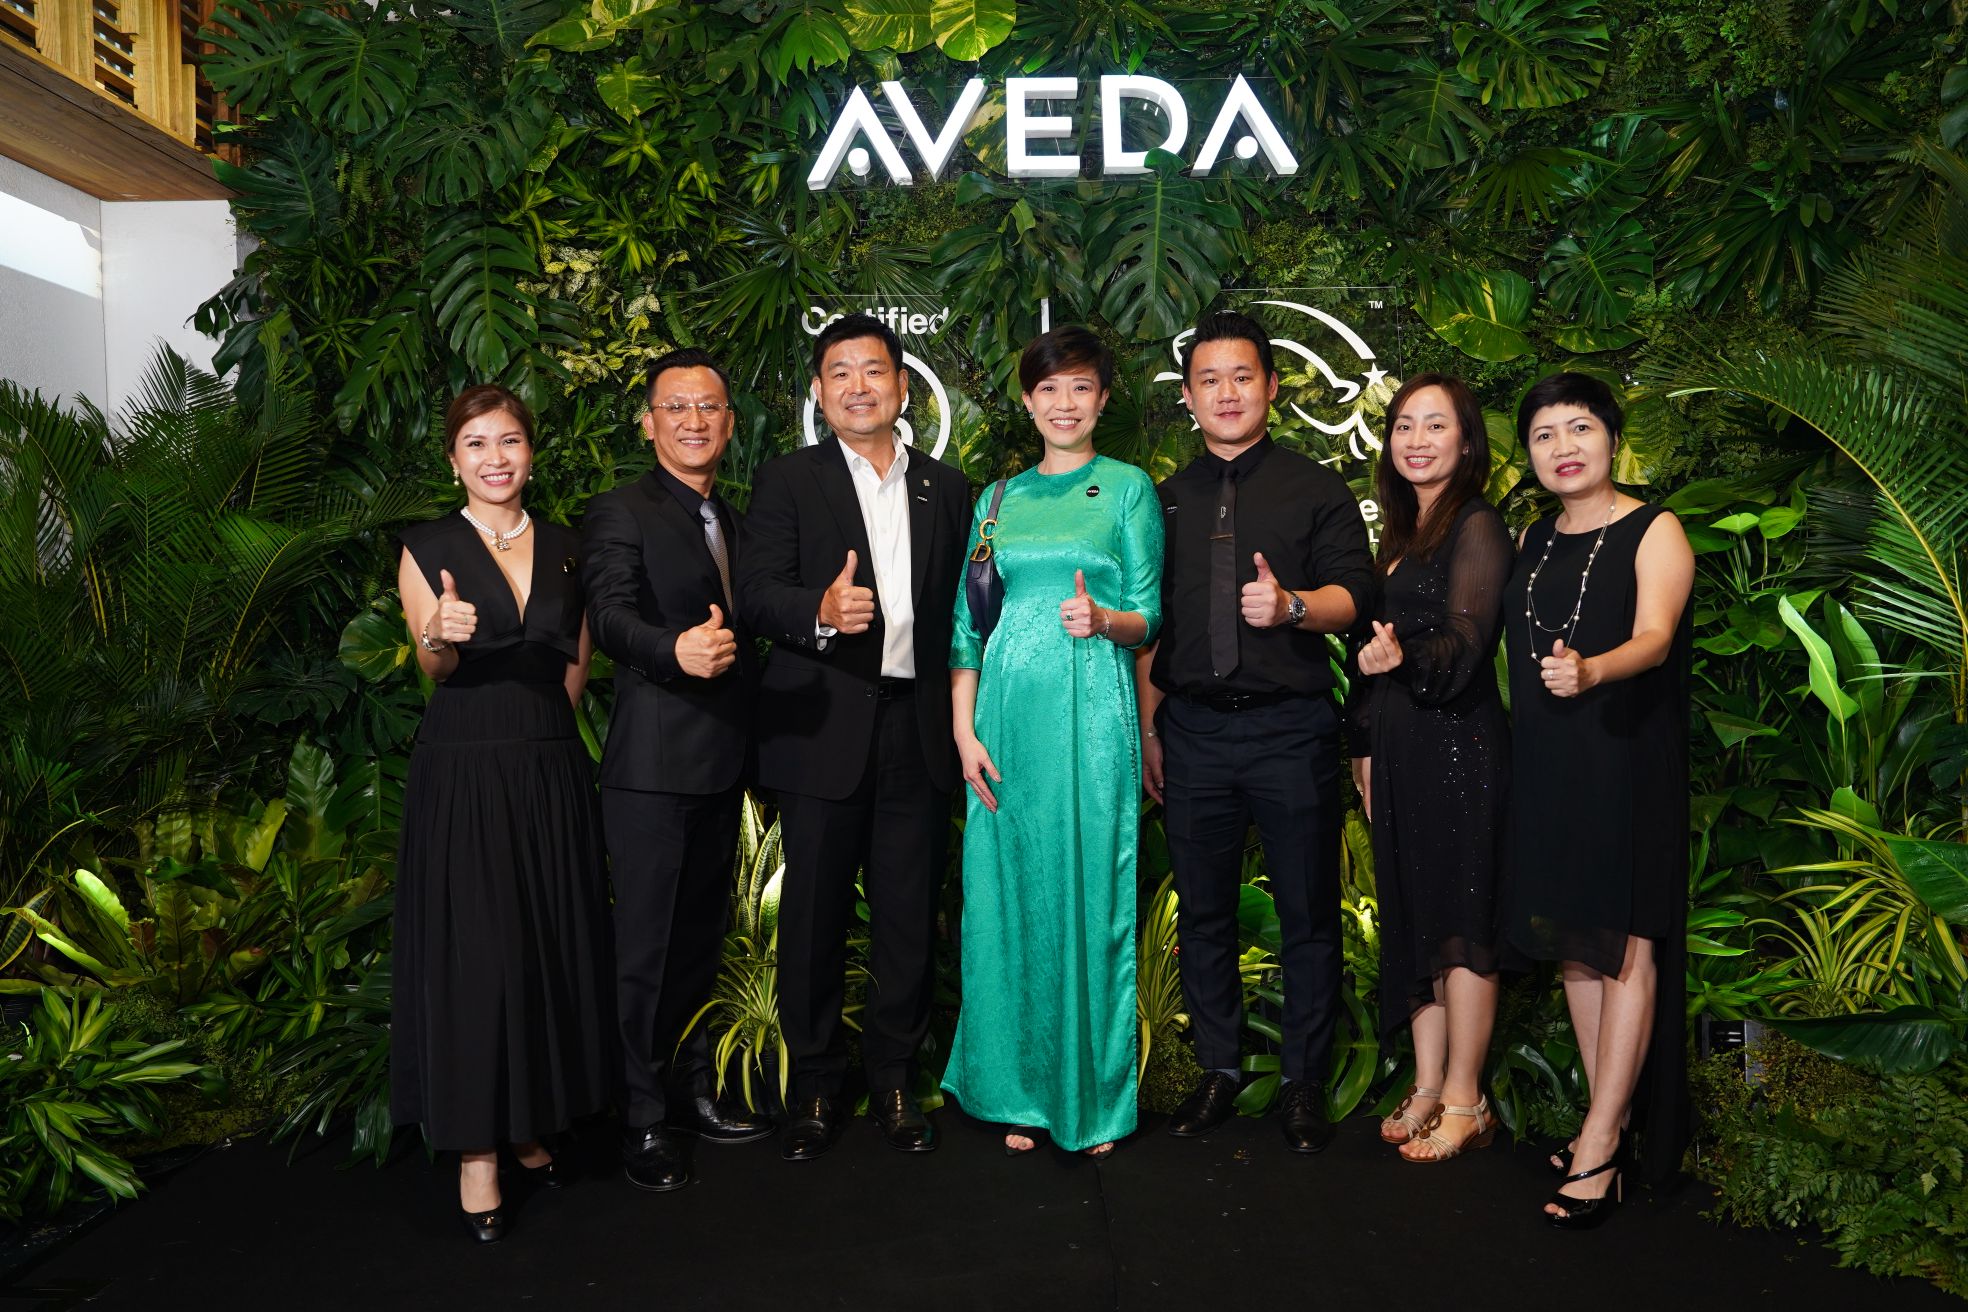 01 Khu vực trải nghiệm   VIP 2 Aveda   Thương hiệu chăm sóc tóc thuần chay   chính thức ra mắt tại Việt Nam